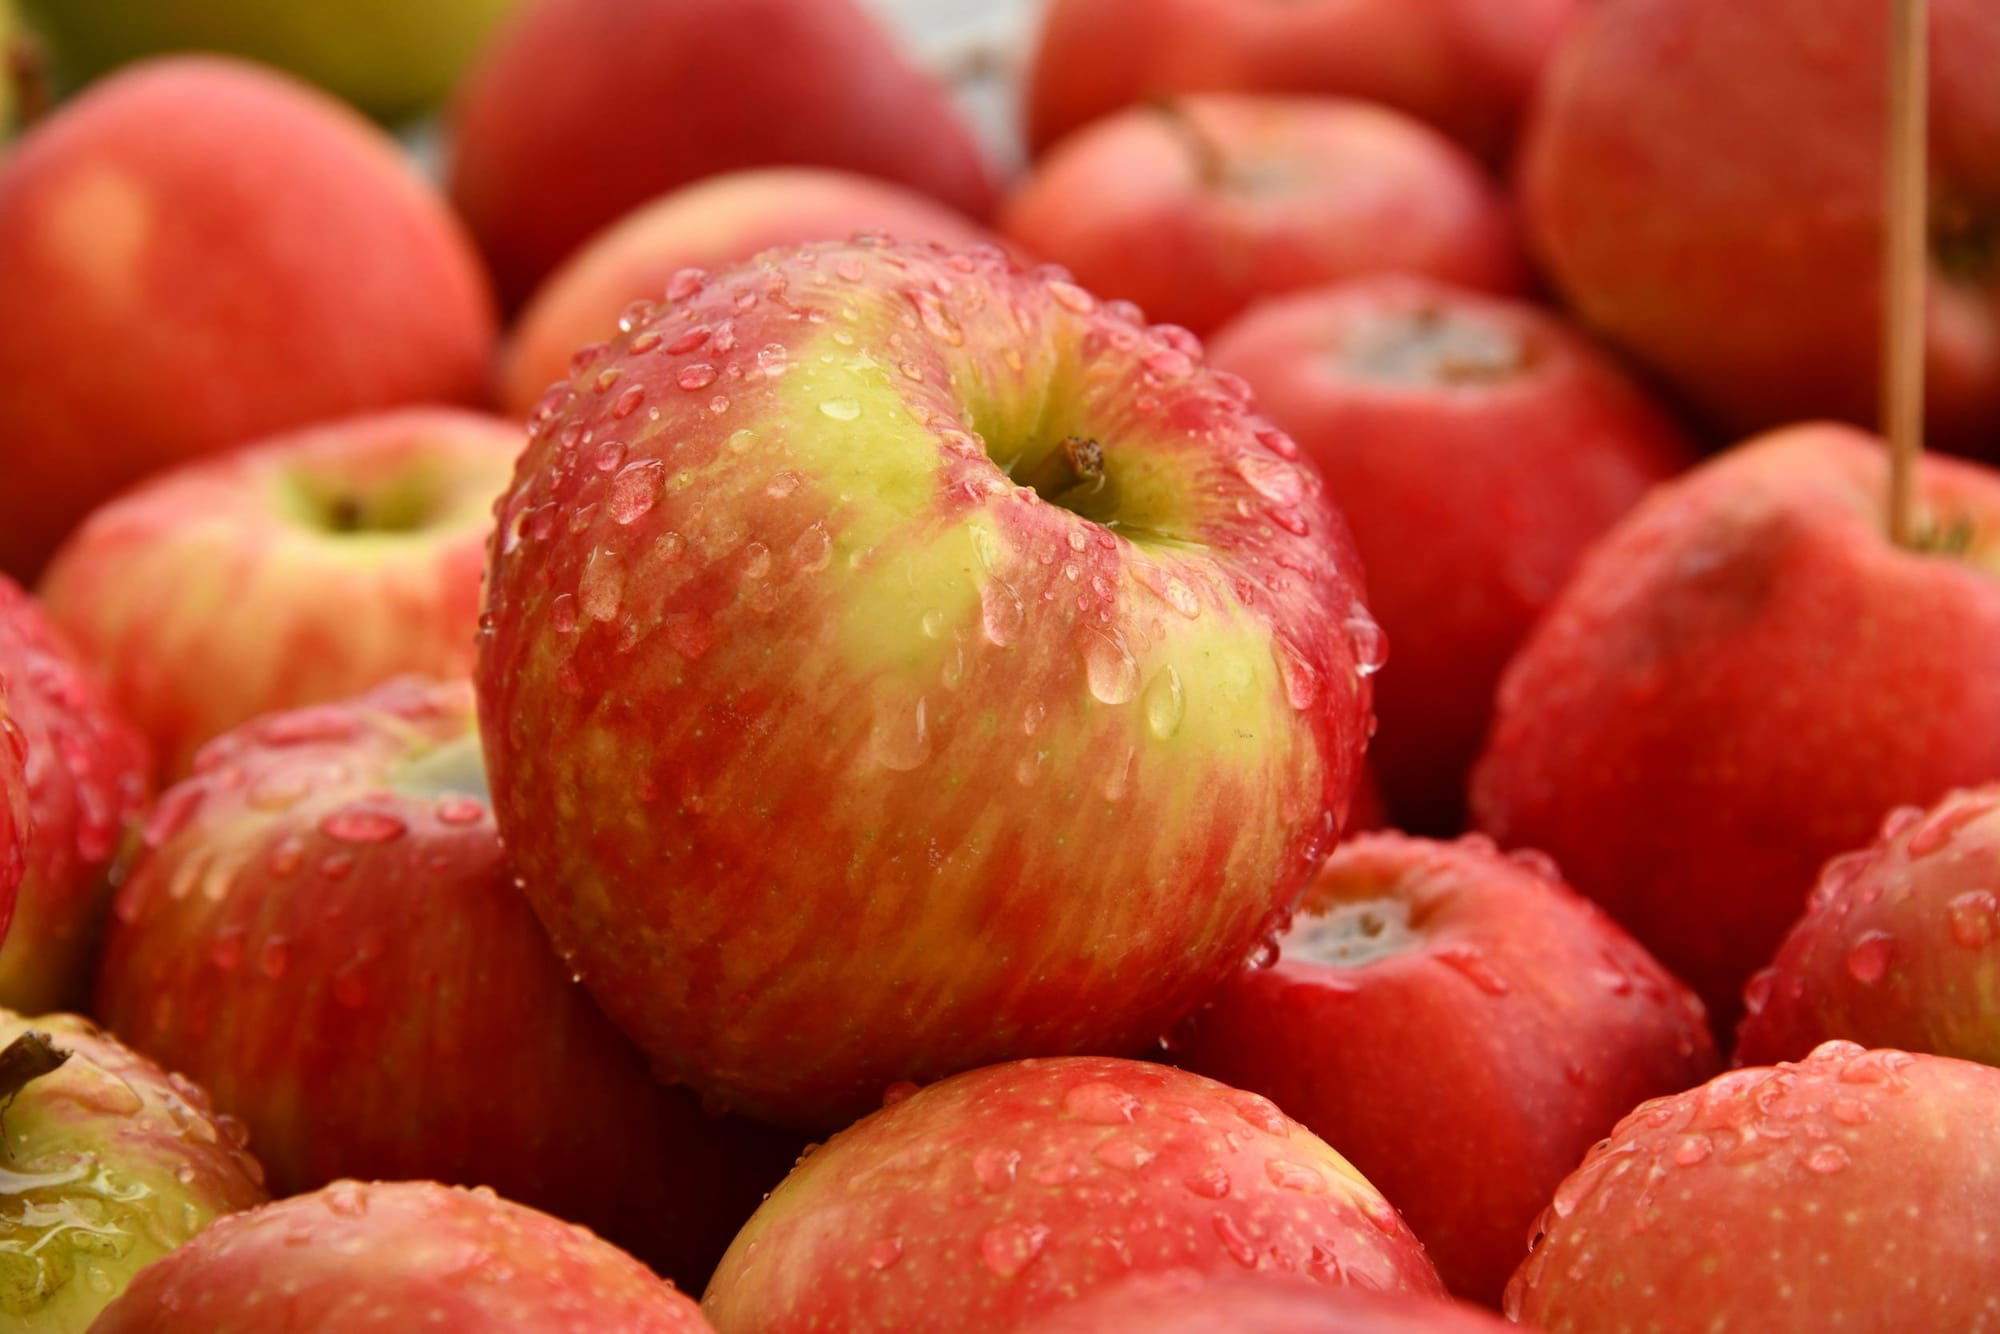 فوائد سحرية للتفاح.. أهمها الحماية من السرطان